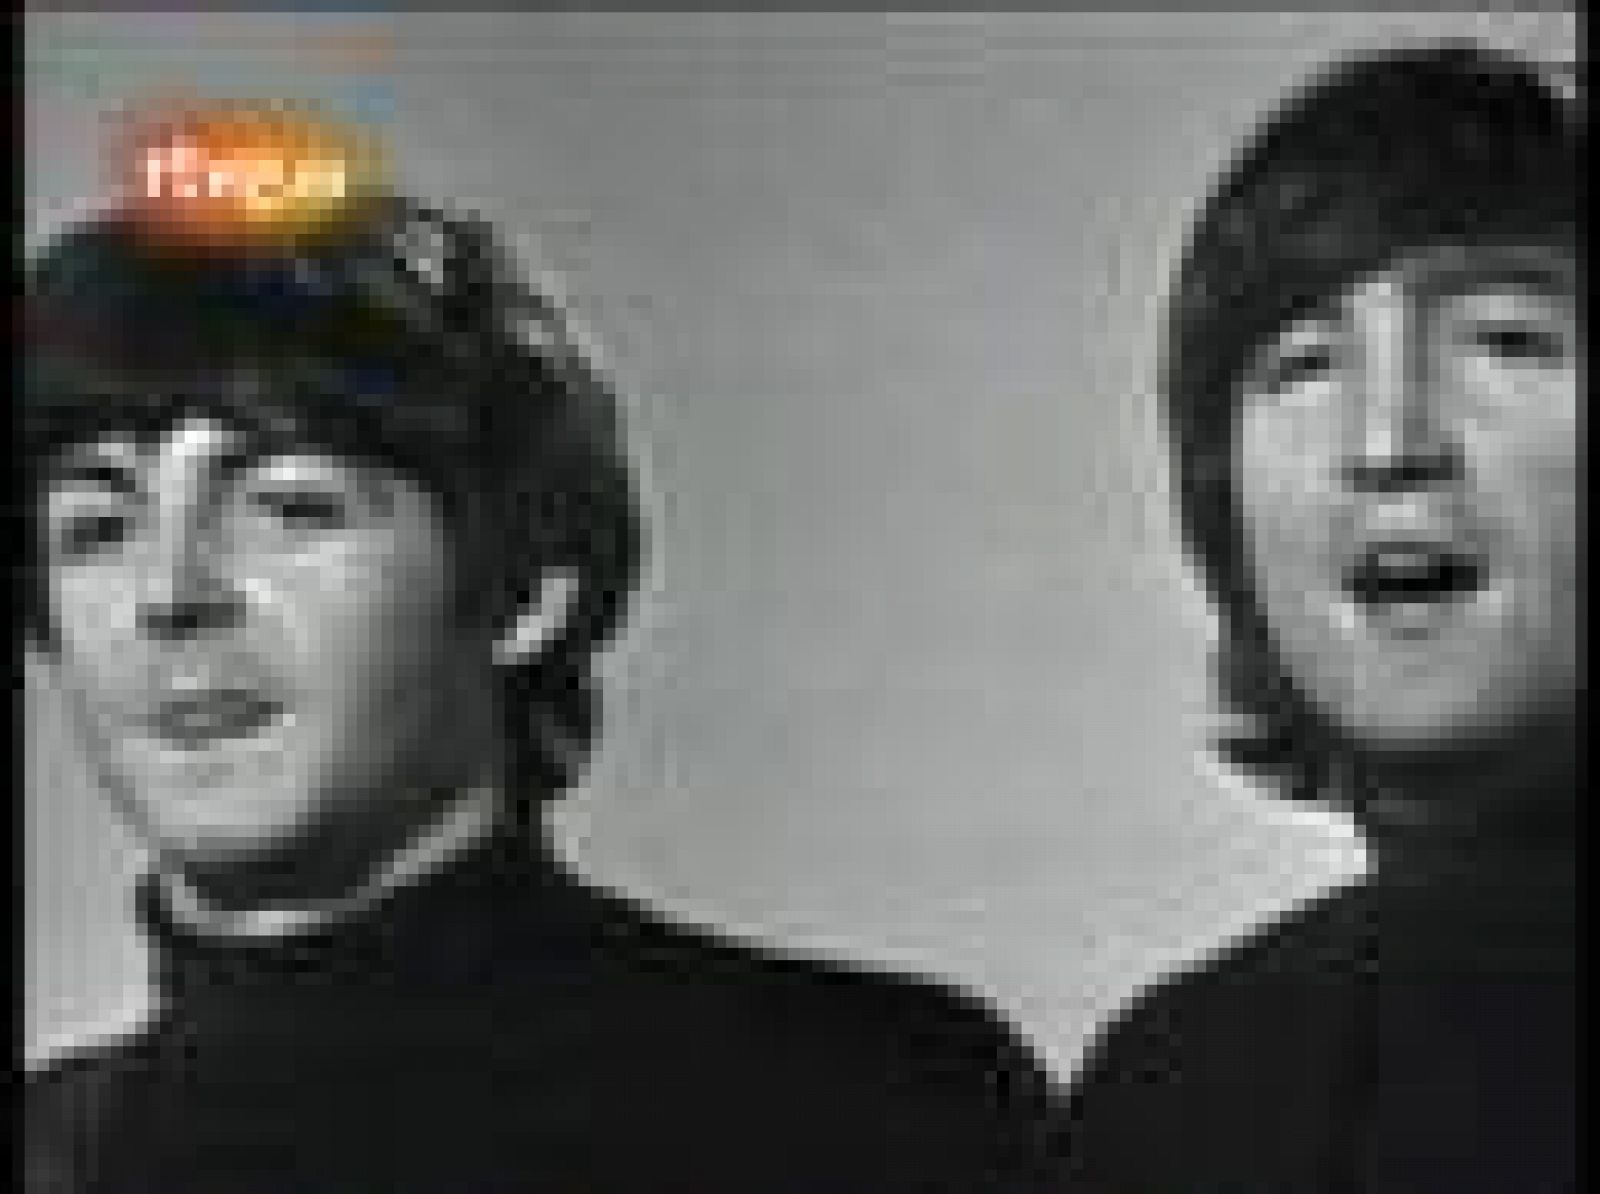  Monográfico del programa Planeta Rock que recoge los mejores vídeos y actuaciones de The Beatles, desde 'Love me do' hasta videos de sus miembros en solitario como 'Come Together' de Lennon. 